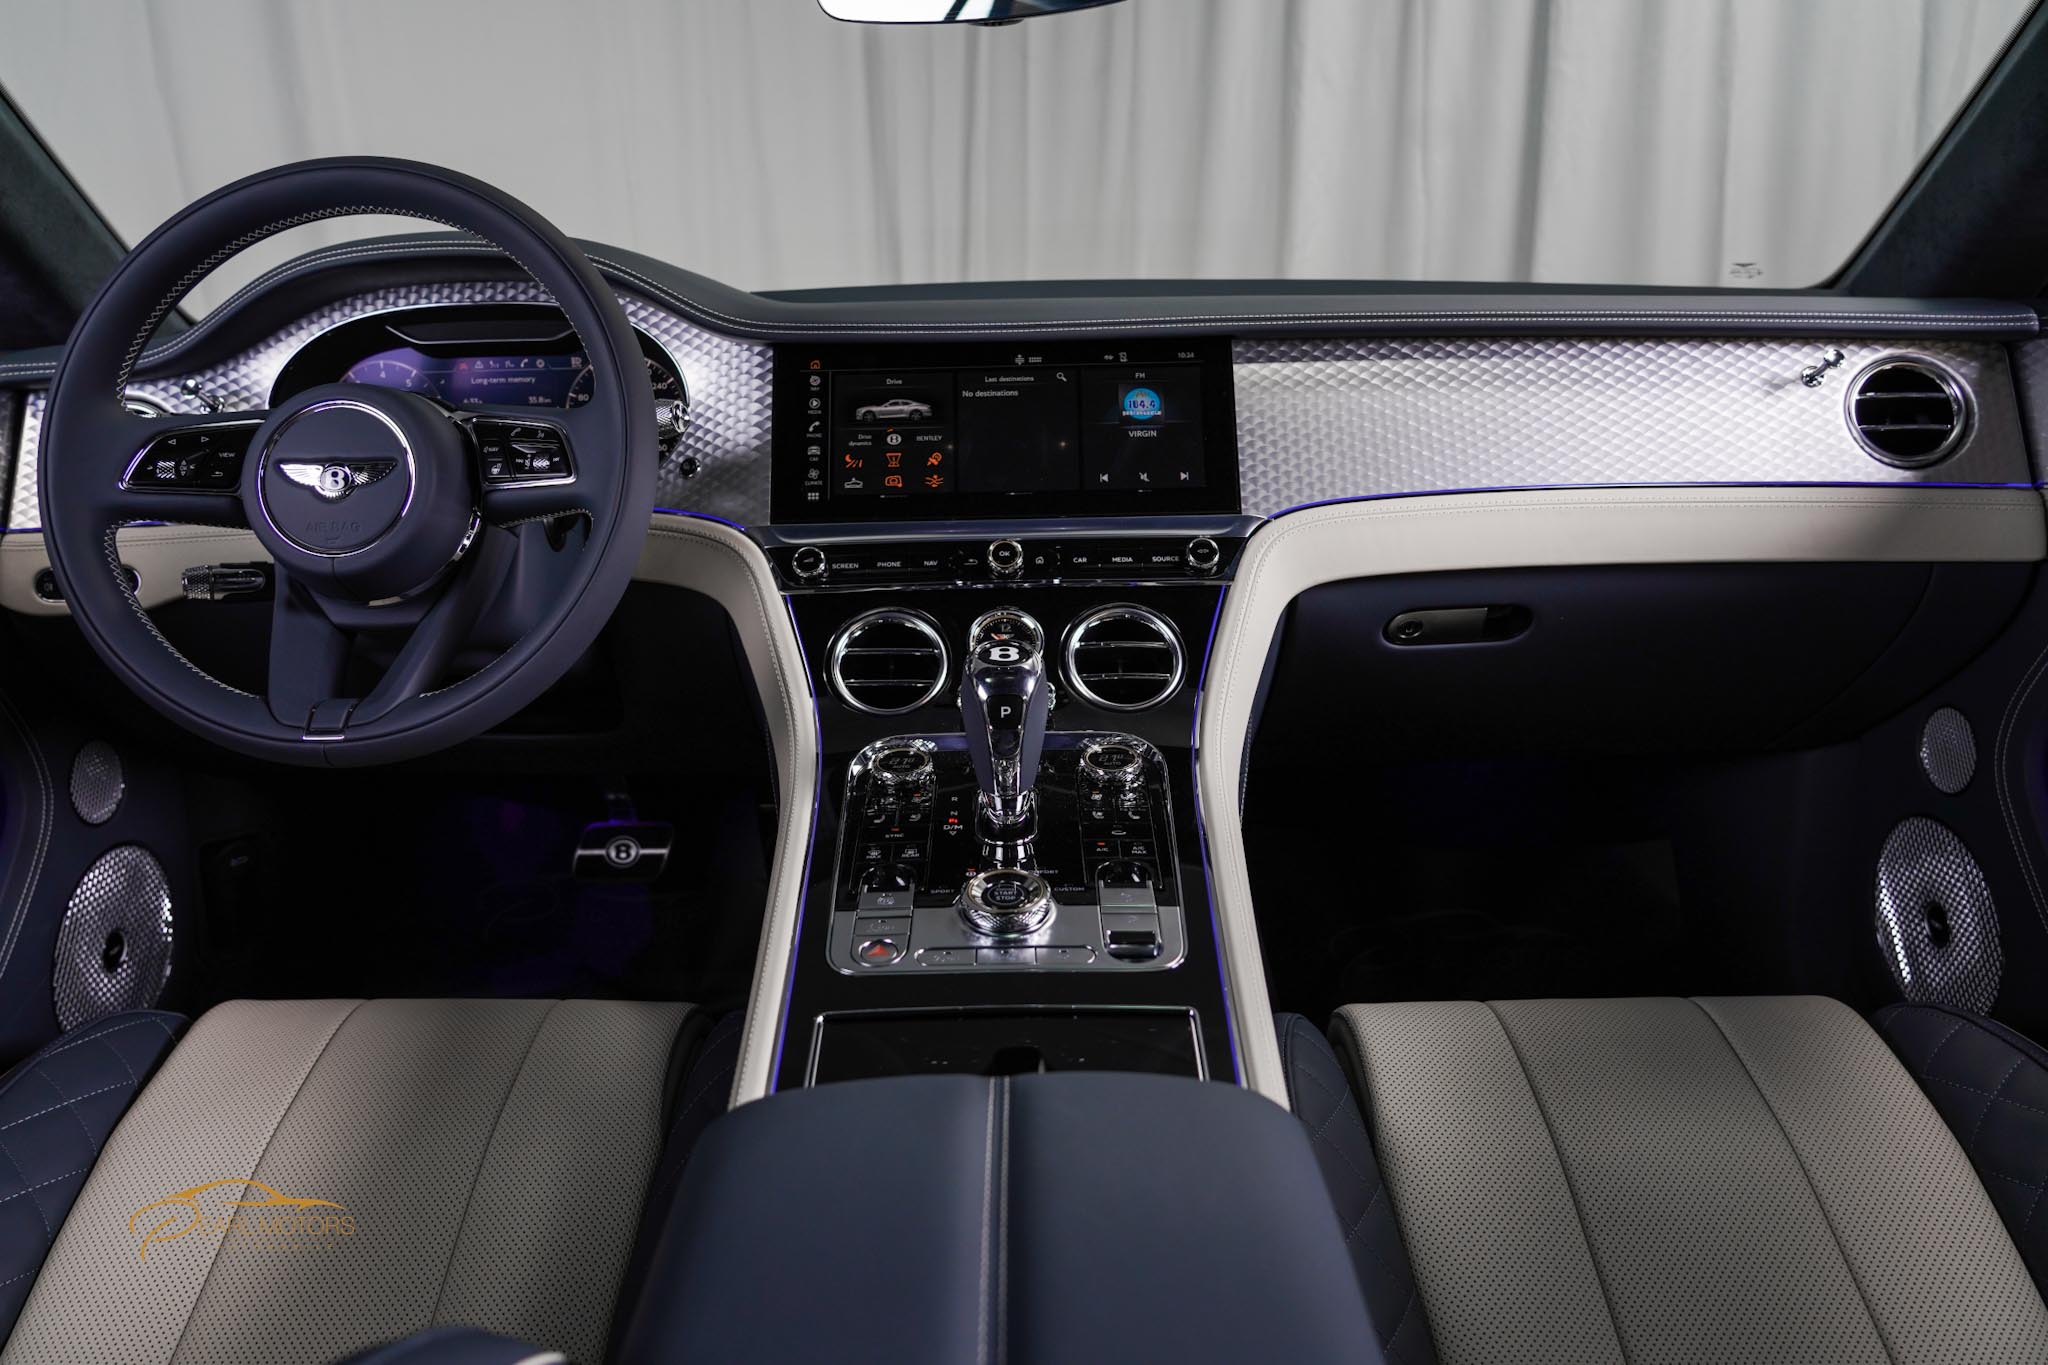 Bentley Continental GT 